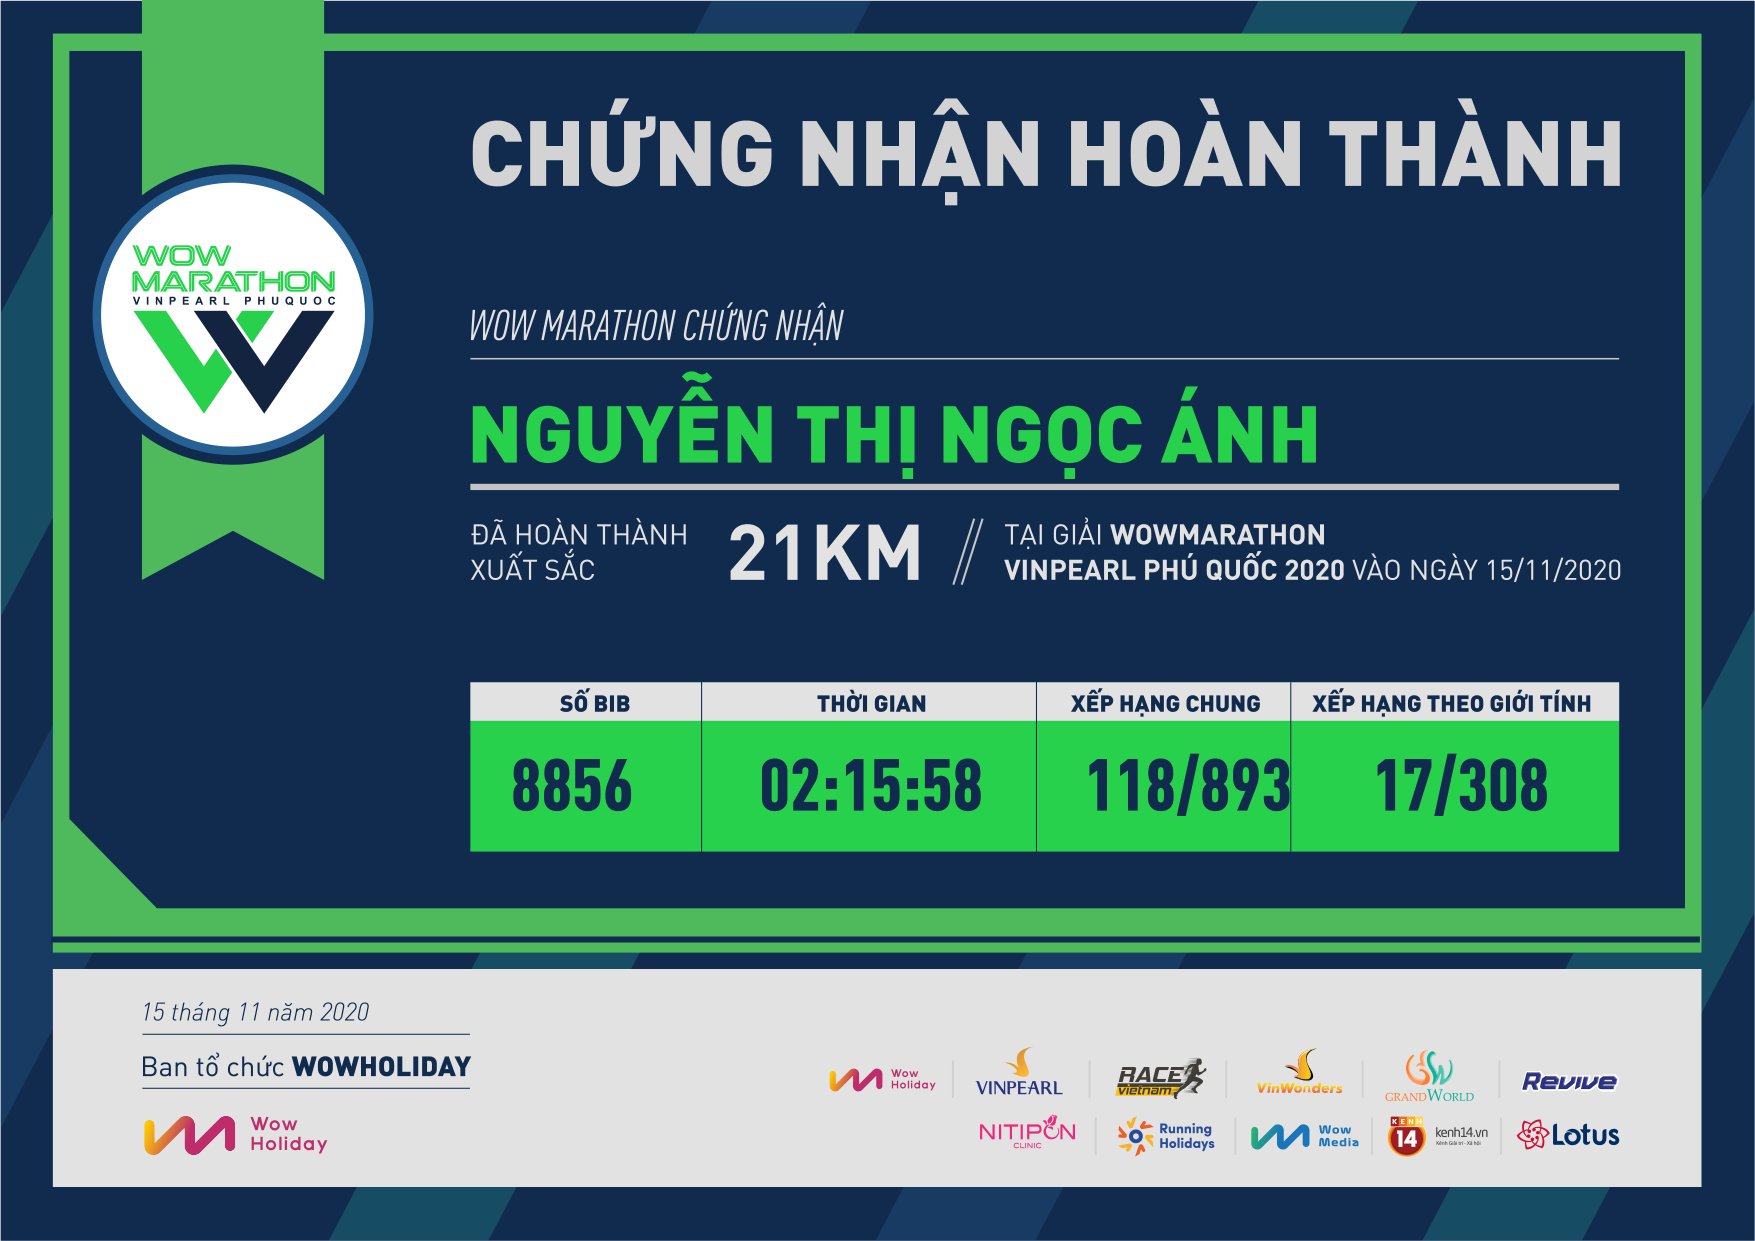 8856 - Nguyễn Thị Ngọc Ánh